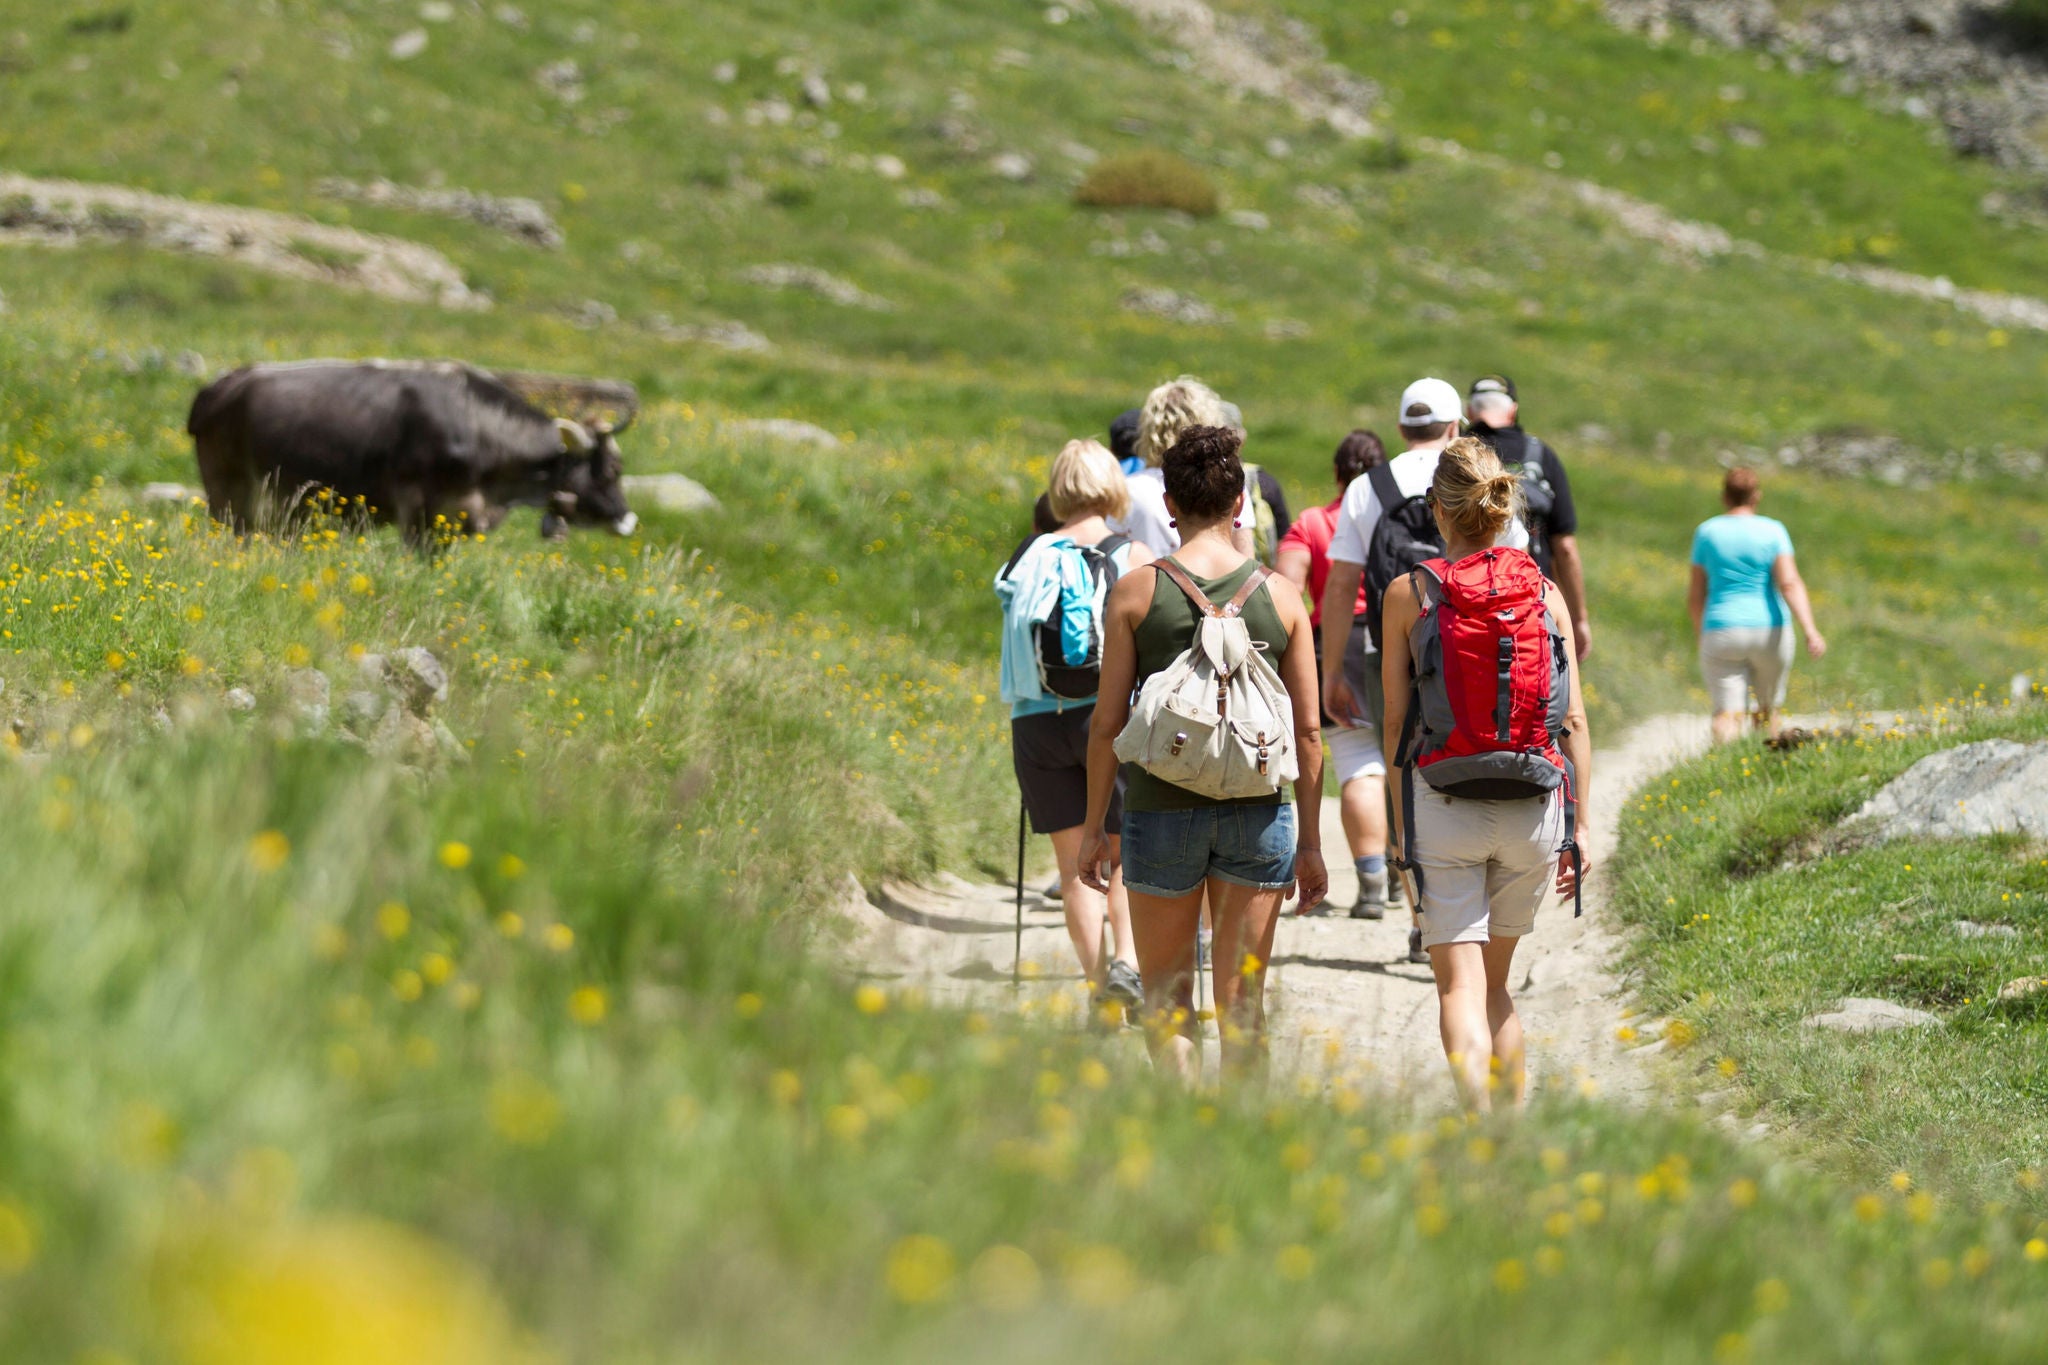 Eine Gruppe von Wanderern in der Rückenansicht auf einem sonnigen Wiesenweg, am Wegrand grast eine Kuh.